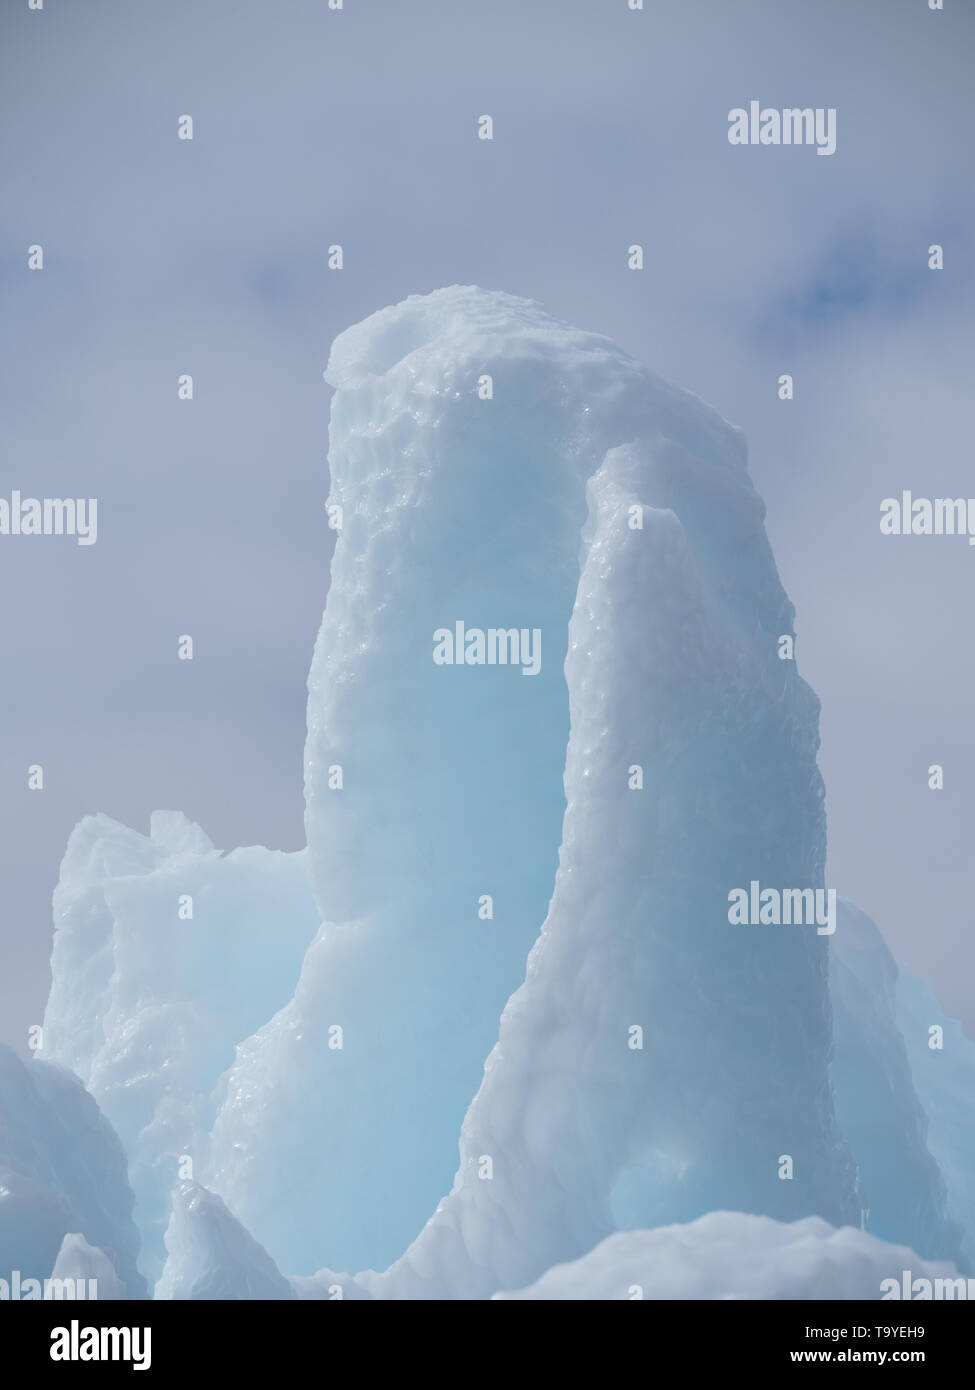 Bébé bleu iceberg vertical avec marques de cloque ou divots brillait au soleil dans l'Océan Atlantique Souhtern. Banque D'Images